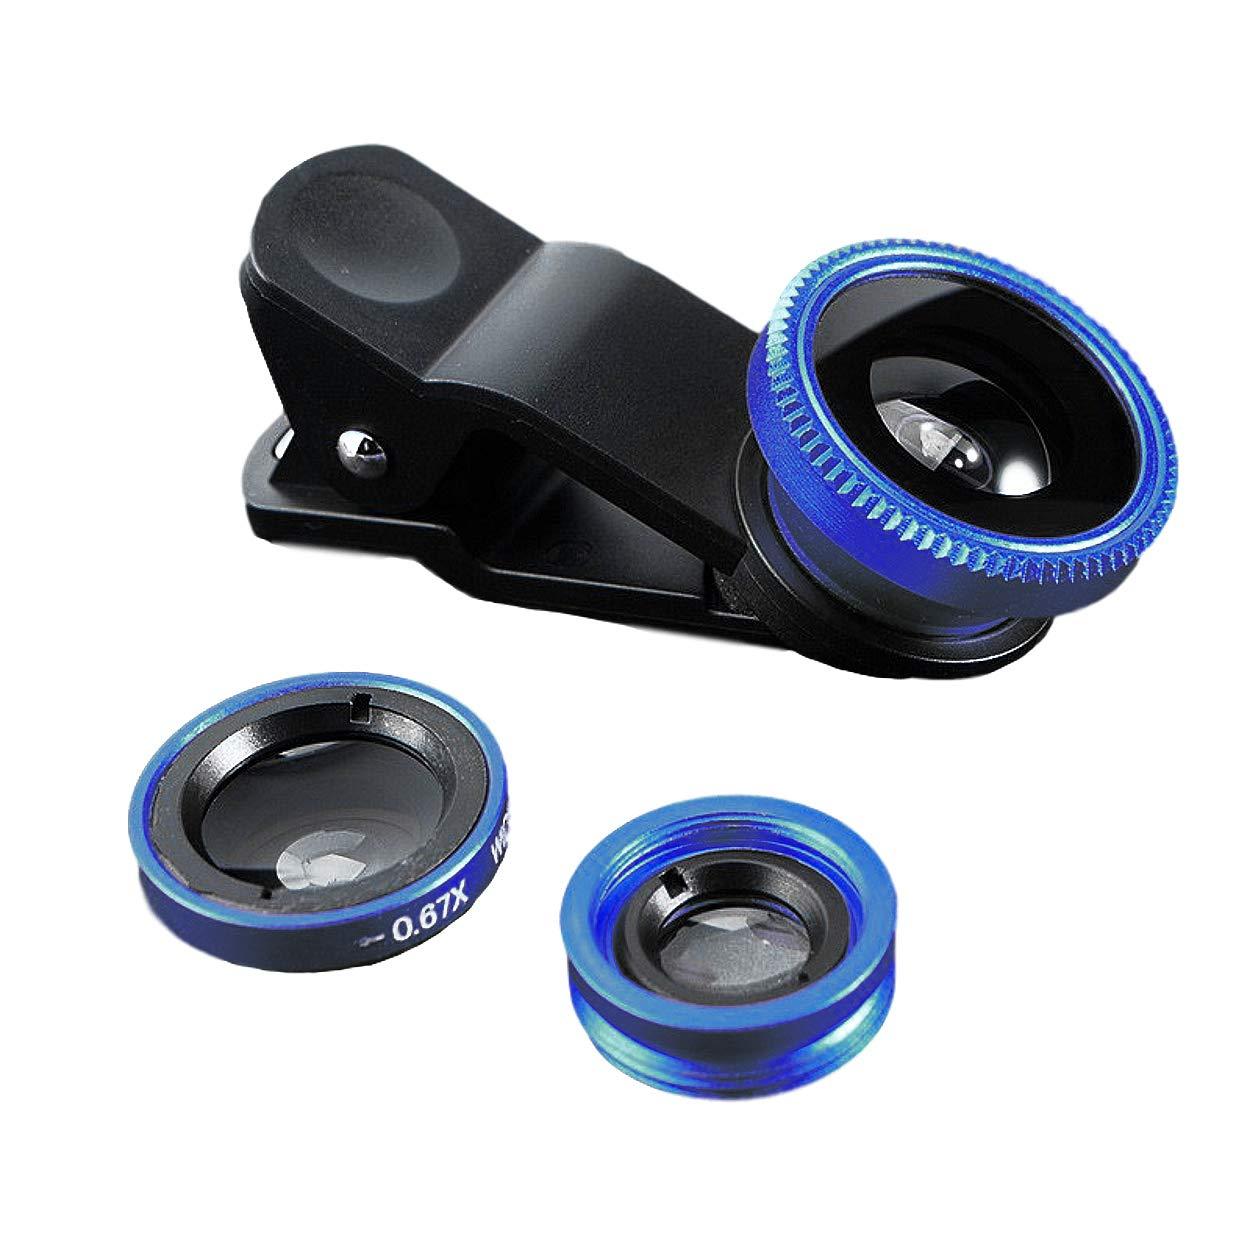 Bộ ống kính điện thoại 3 trong 1 bộ, bộ chuyển đổi camera clip cho điện thoại thông minh - ống kính mắt cá (ống kính 180 ° Fisheye) + góc rộng (rộng 0,67X) + ống kính macro (10X) - Thích hợp cho tất cả các điện thoại di động (màu xanh)